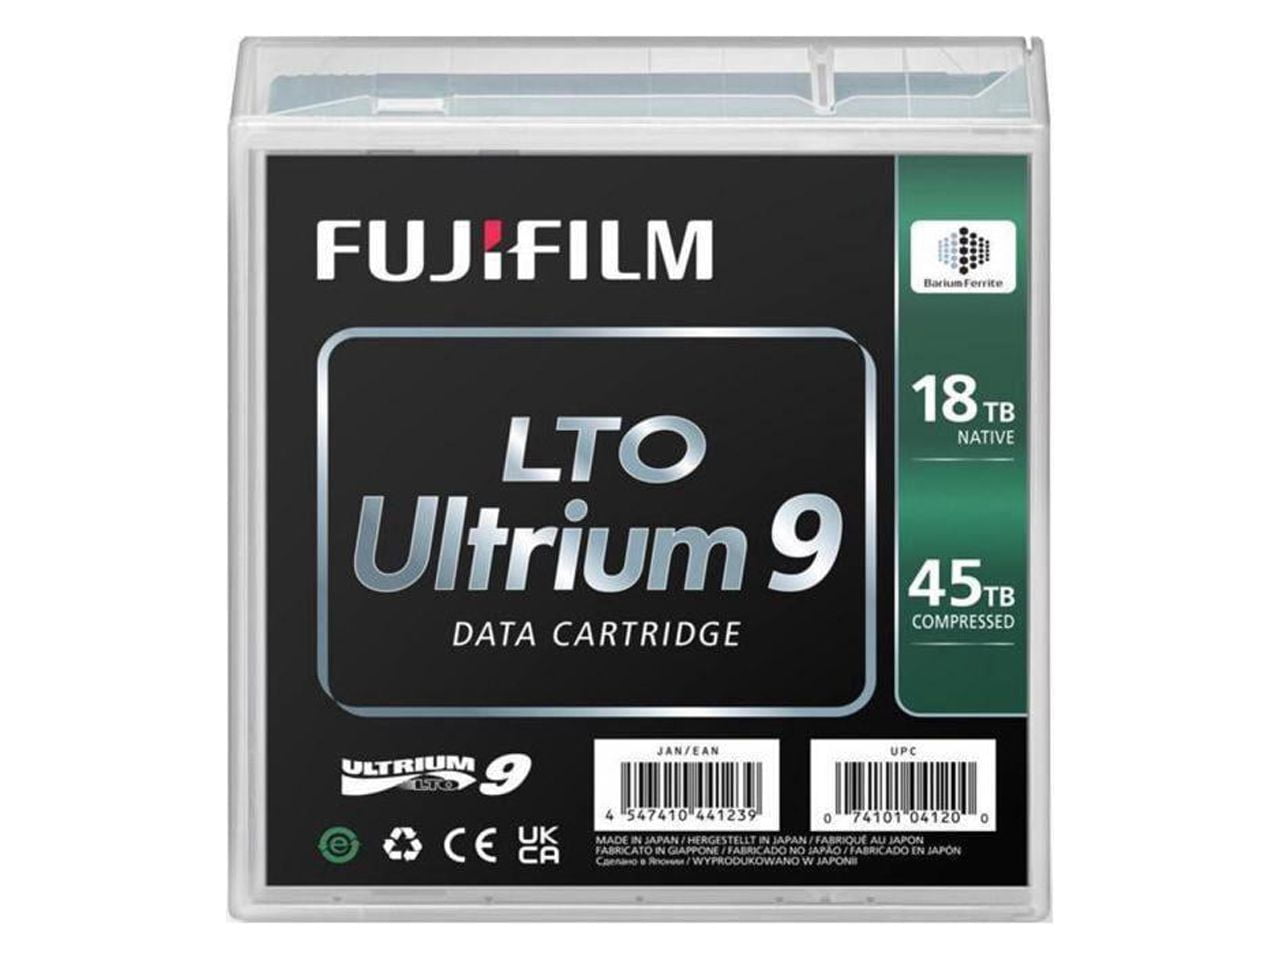 Picture of Fujifilm FUJ16659047 LTO 9 Ultrium Tape